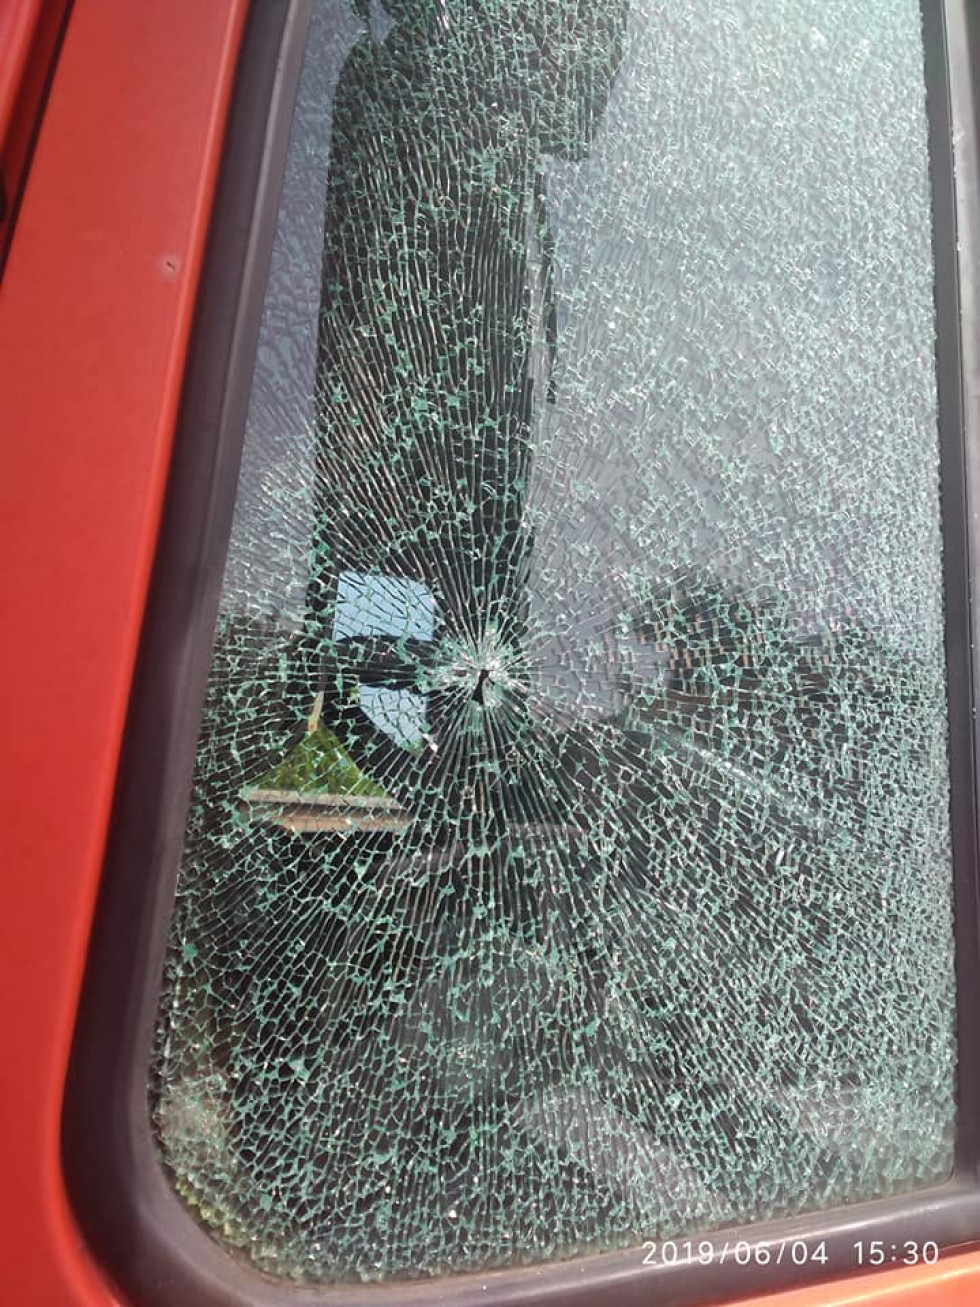 Стріляли по шпаках, влучили у вікно: під Луцьком обстріляли автівку (фото)